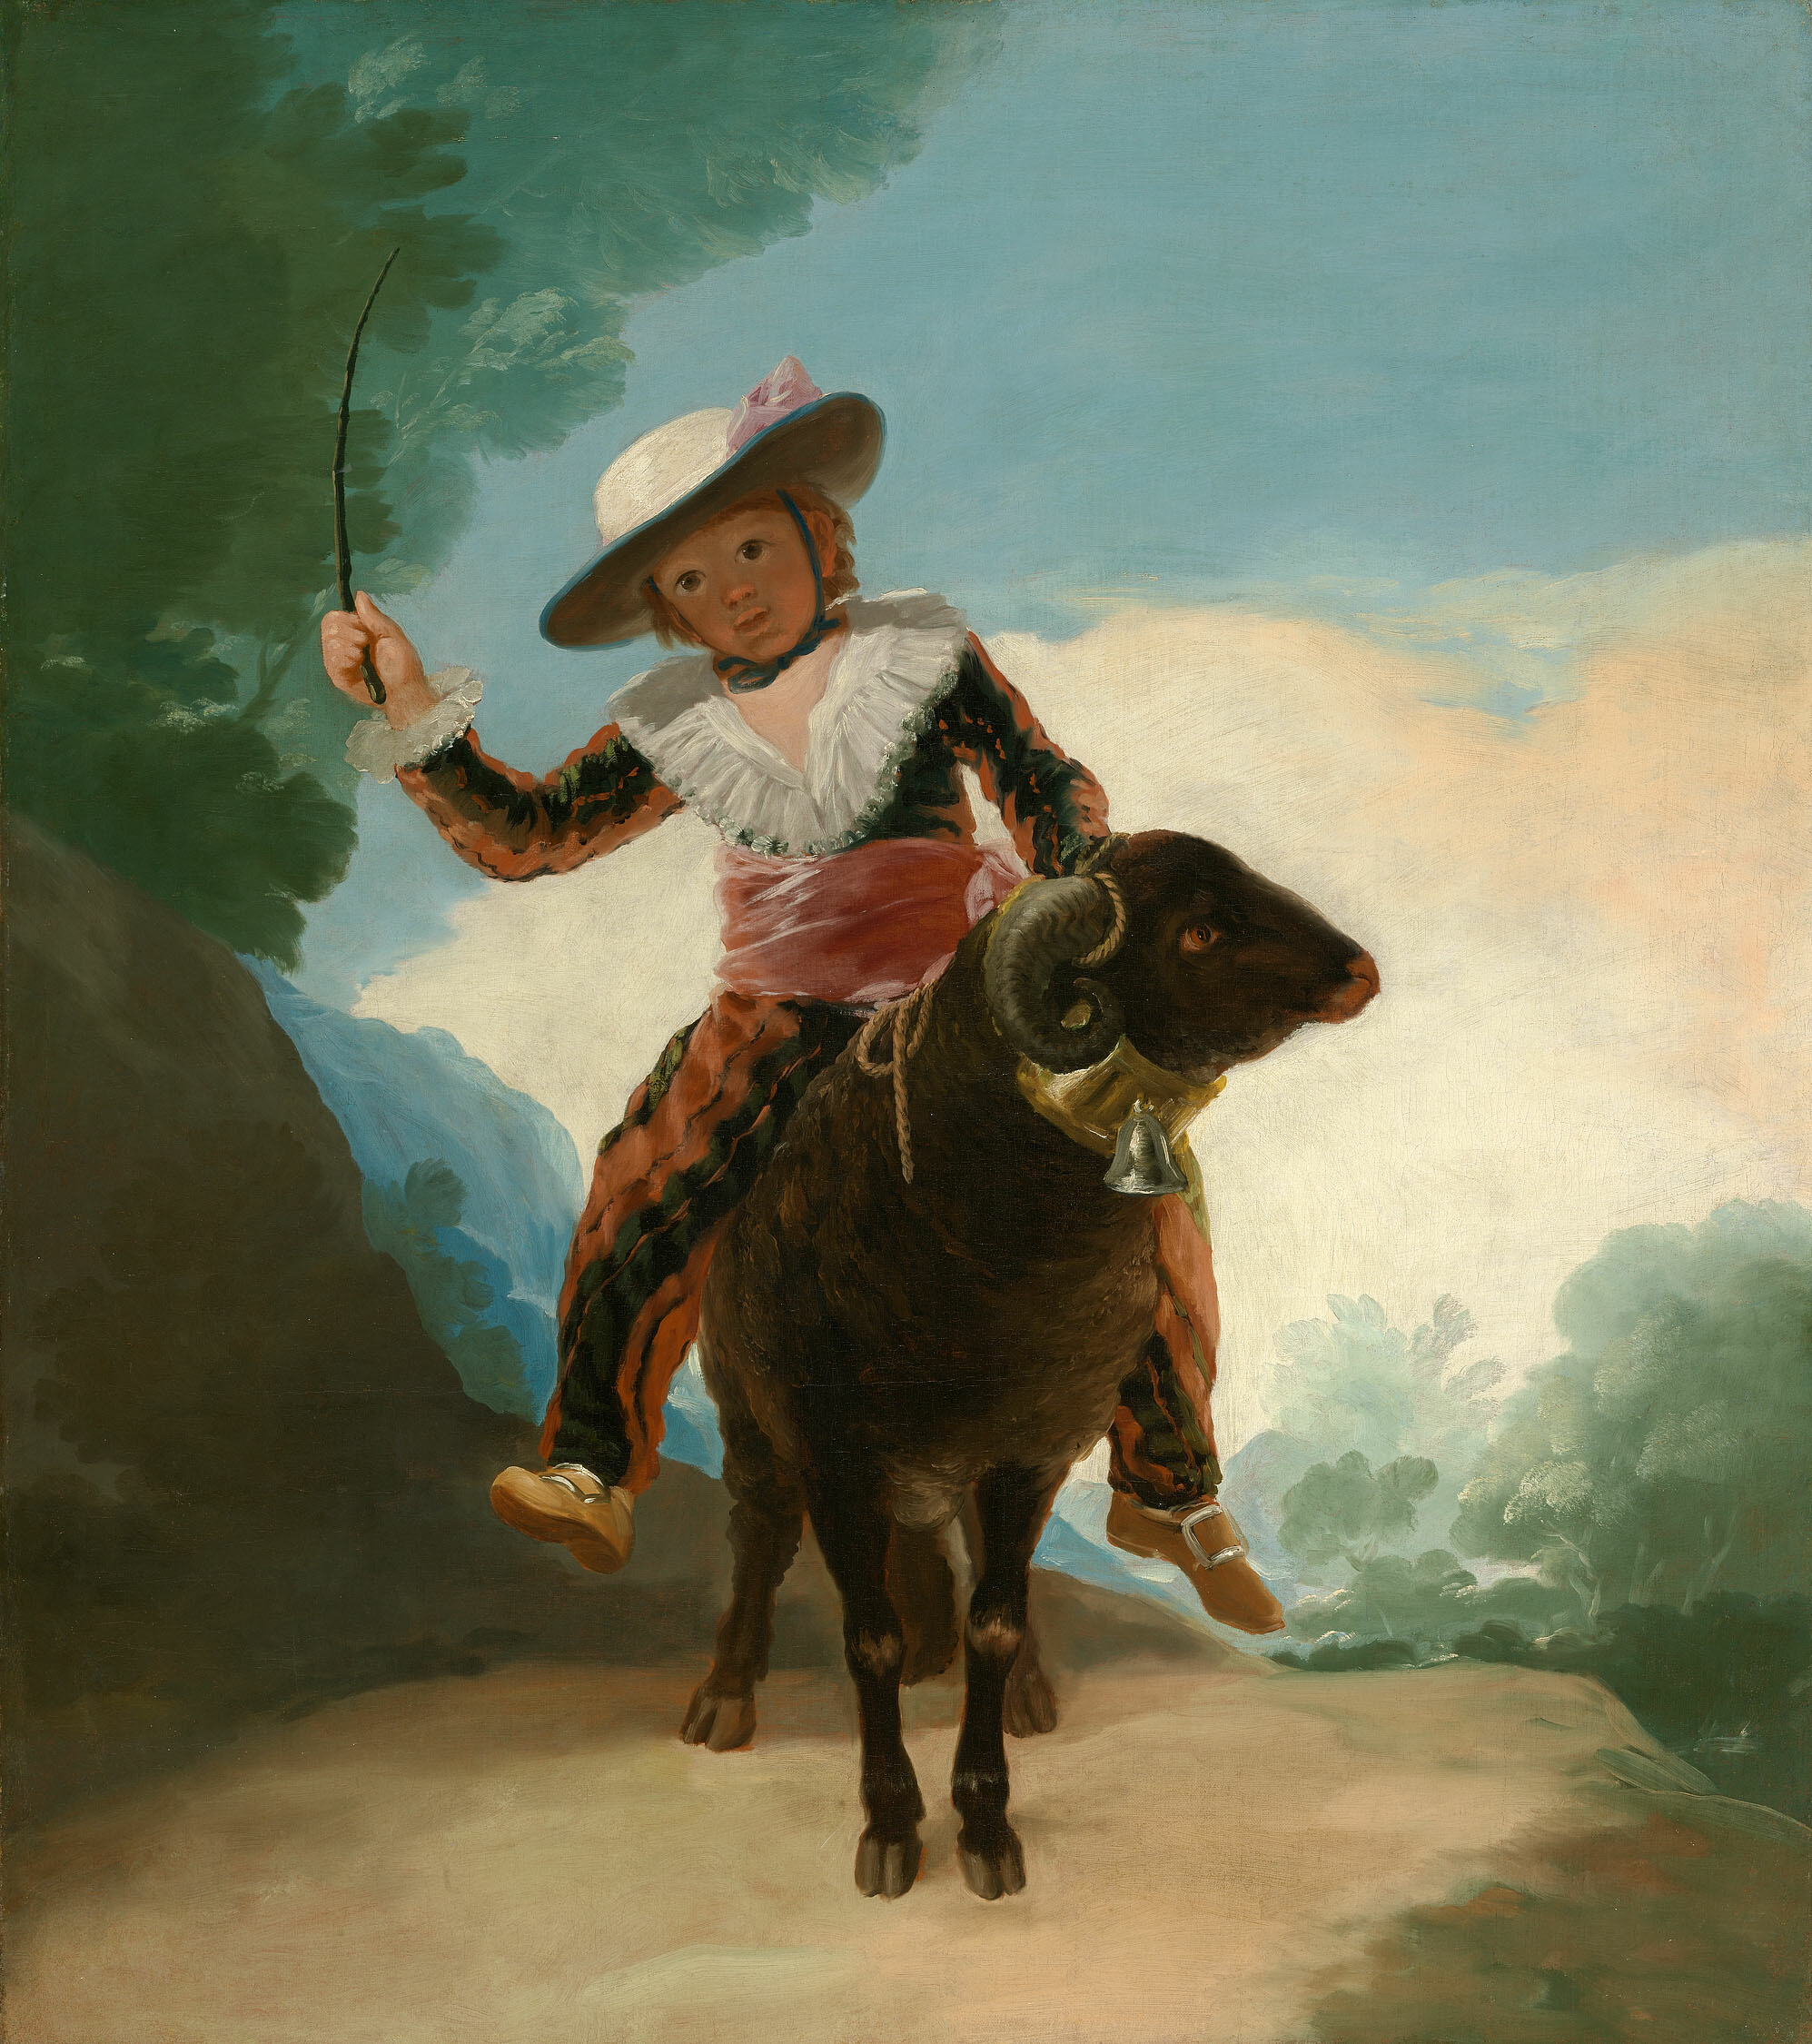 Junge auf einem Widder by Francisco Goya - 1786/87 - 127.2 × 112.1 cm Art Institute of Chicago